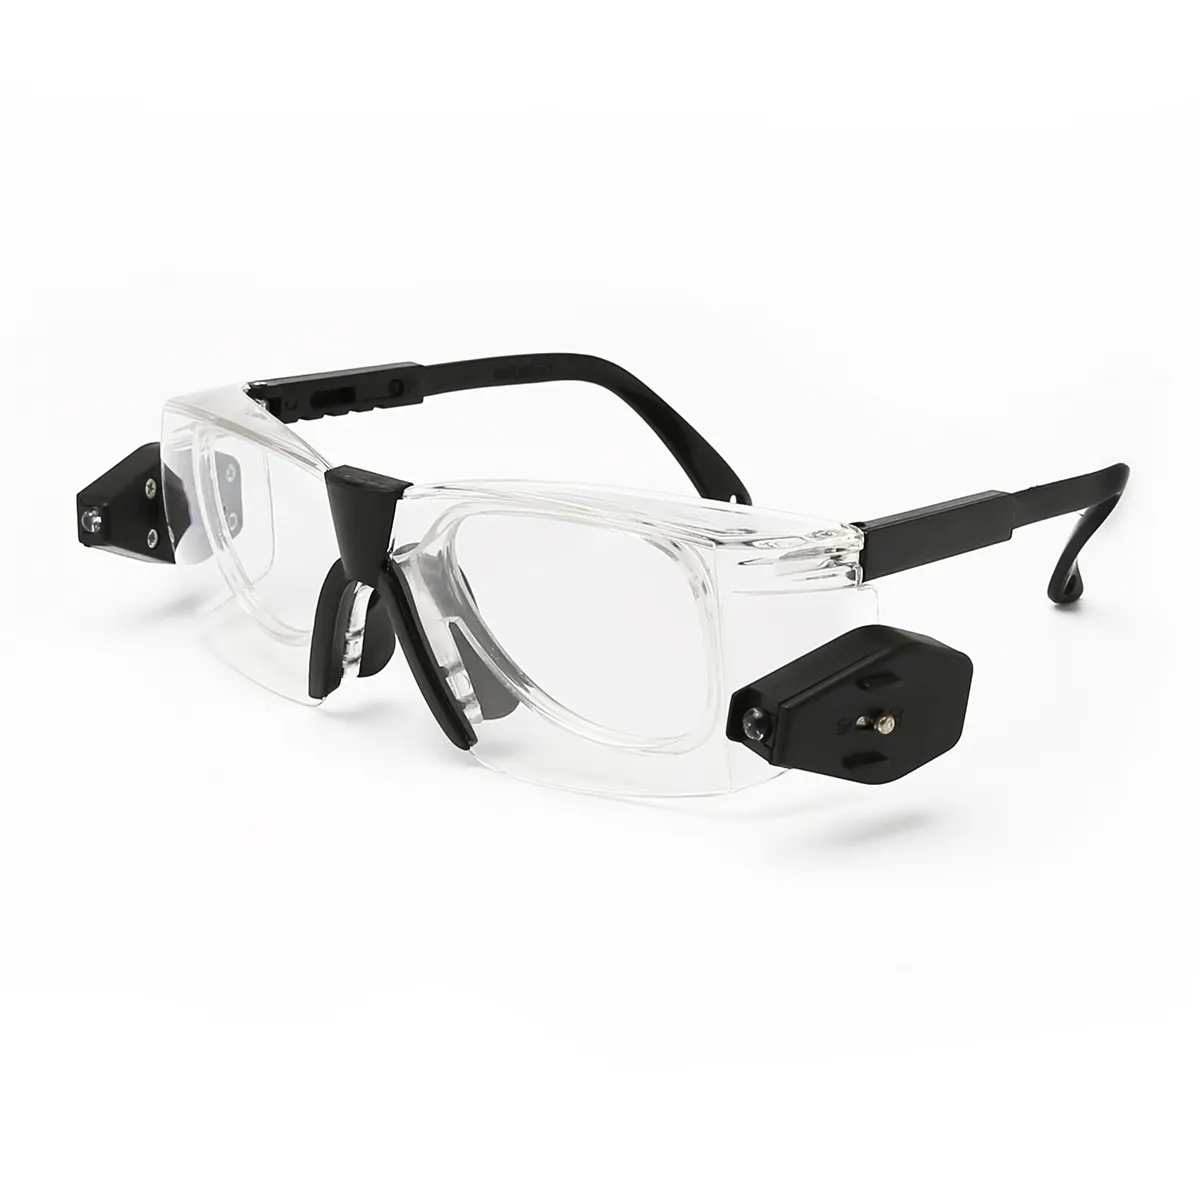 แว่นตาห้องปฏิบัติการใสแบบมืออาชีพ,แว่นตานิรภัยป้องกันการสาดป้องกันหมอกพร้อมไฟ LED